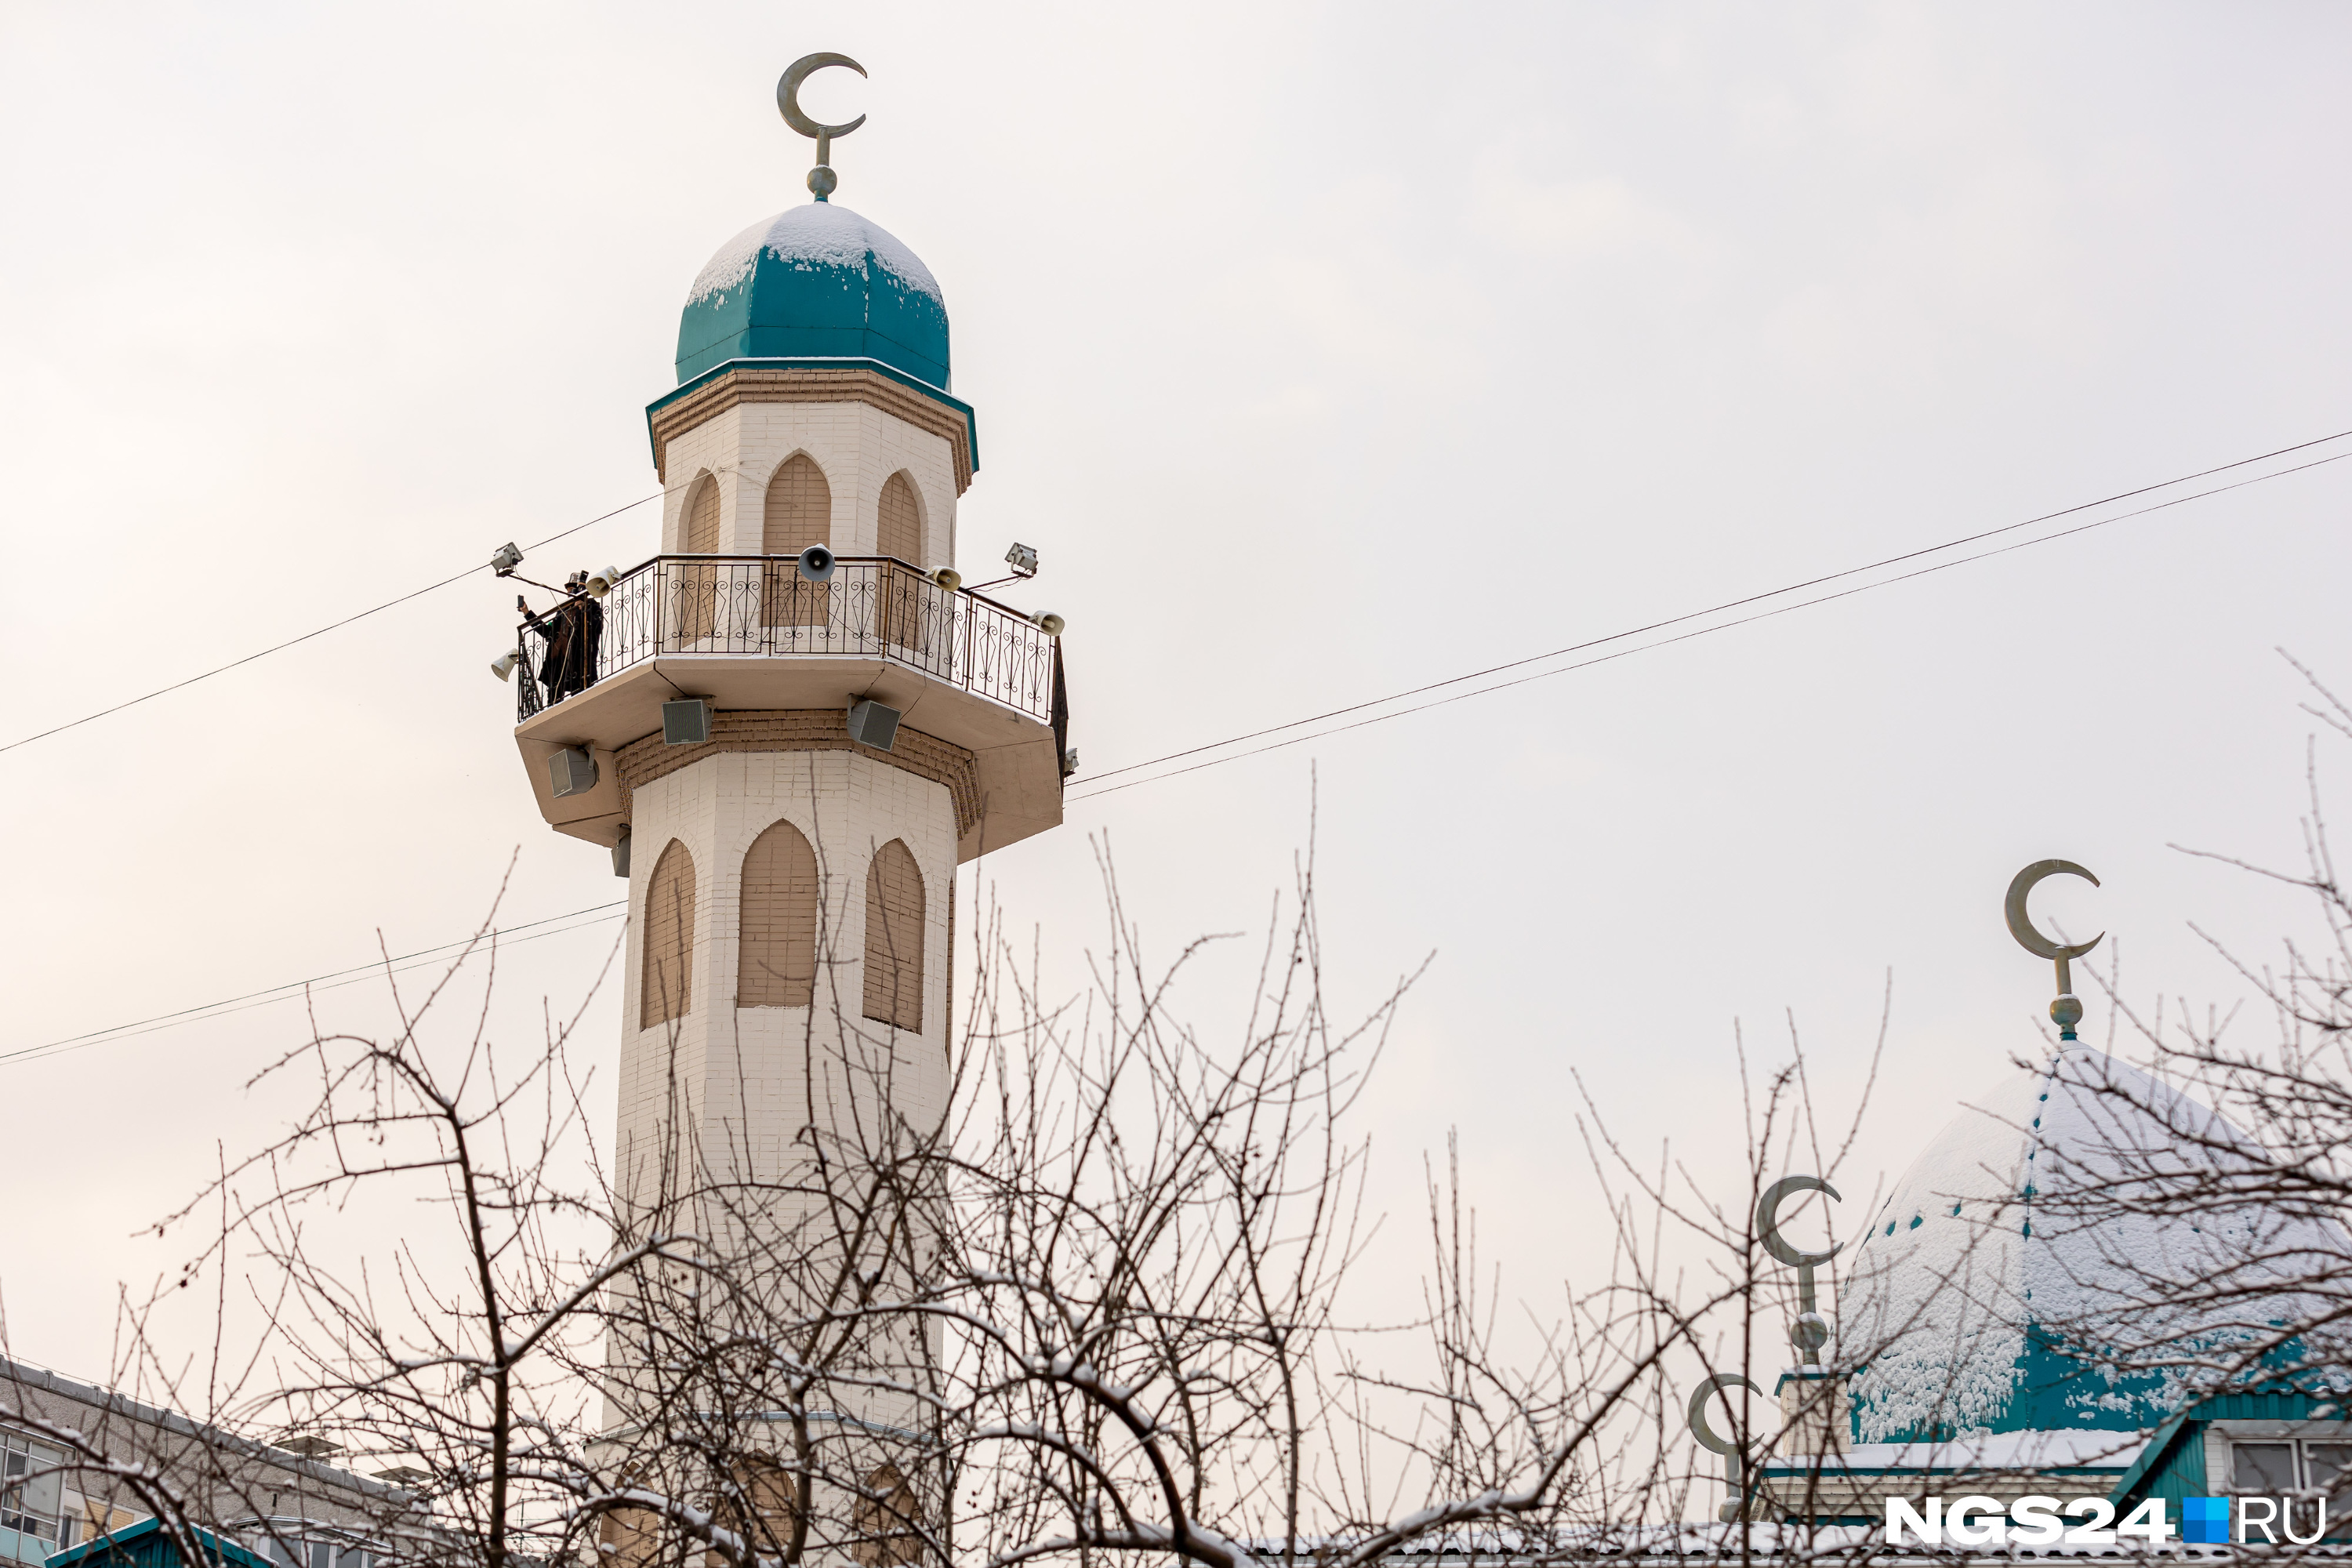 Красноярские мусульмане попросили у Владимира Путина новую мечеть в городе. Вот что им ответили в мэрии